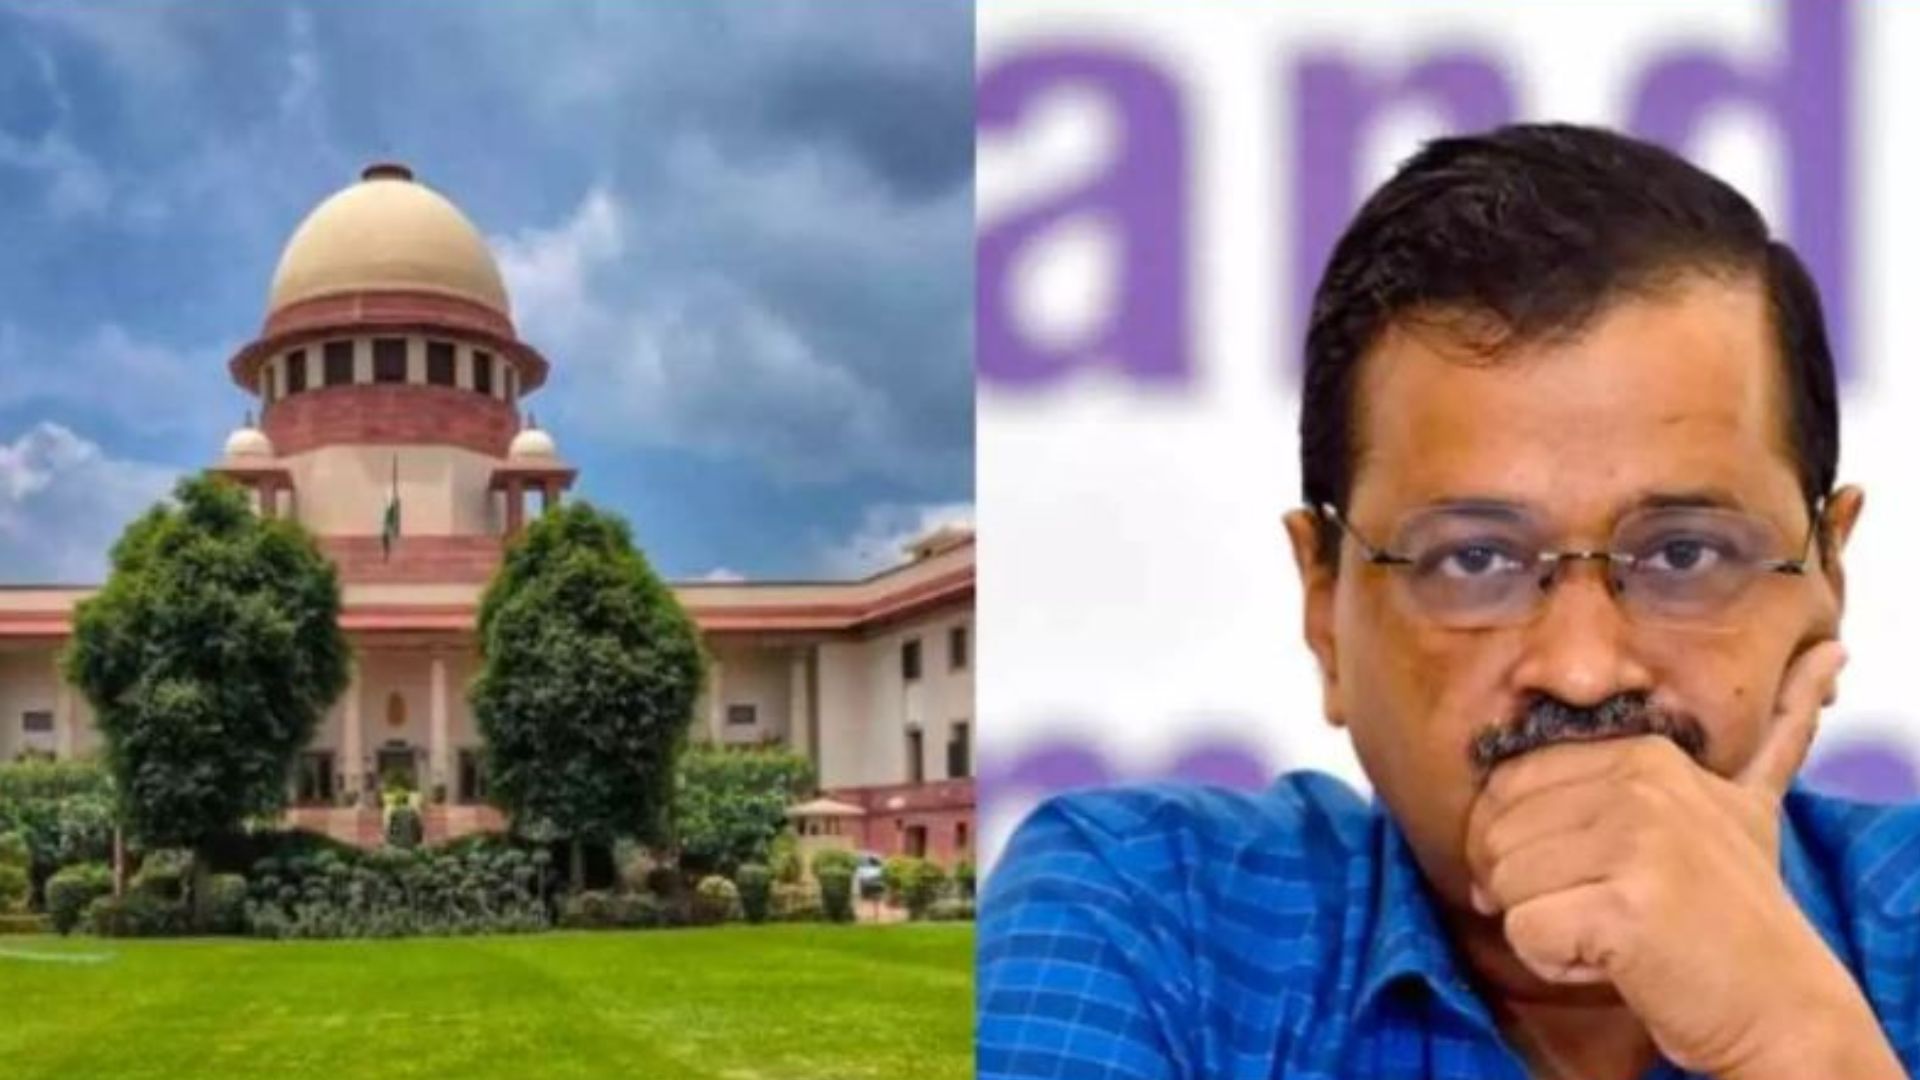 SC ने केजरीवाल को CM पद से हटाने की मांग वाली याचिका की खारिज, पीठ ने कहा- हमारे पास कानूनी अधिकार नहीं